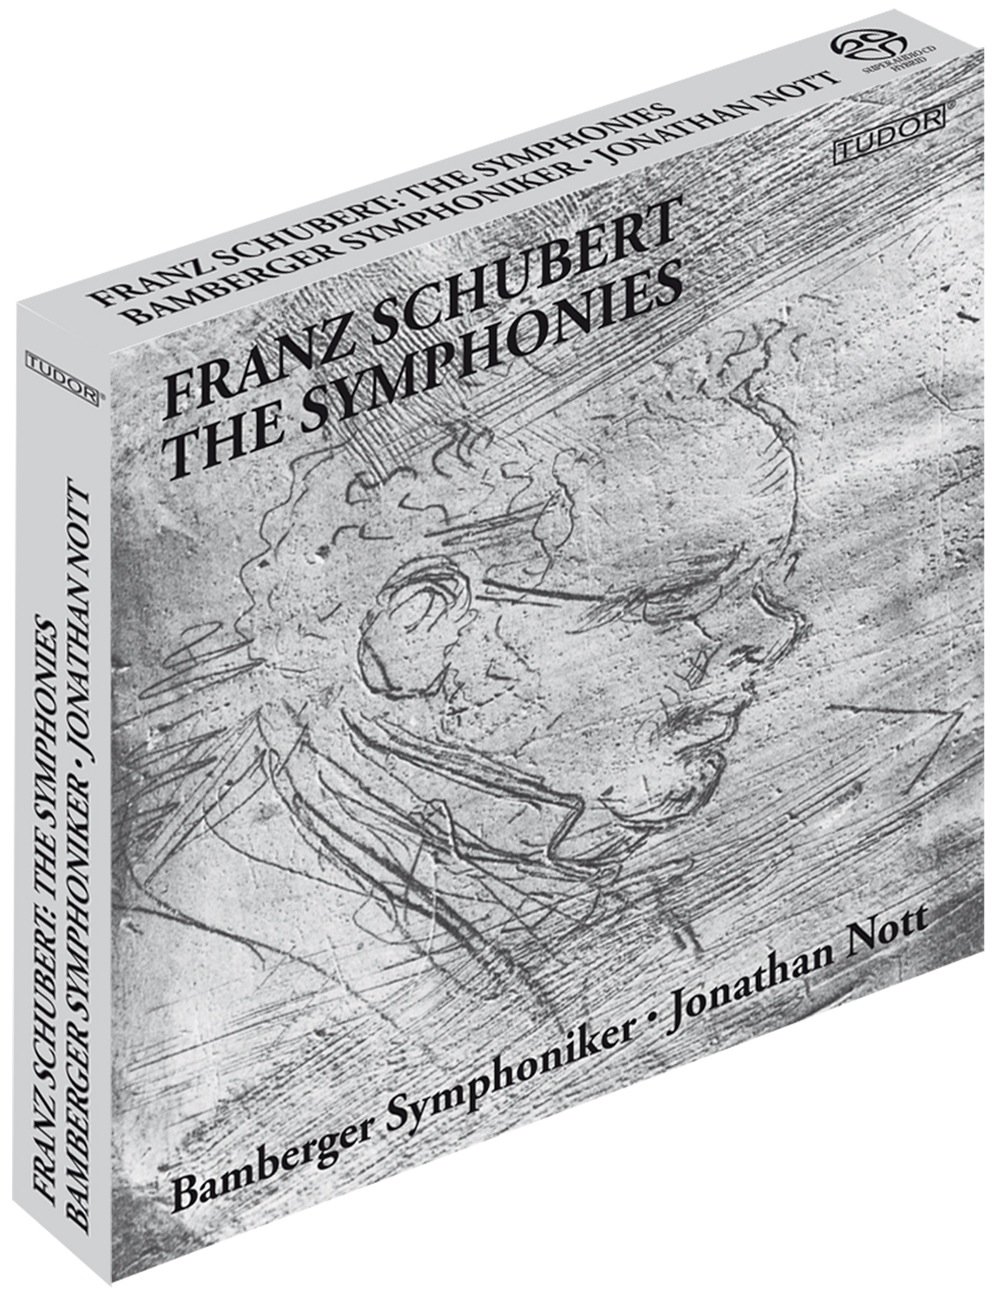 Audio Cd Franz Schubert - Sinfonie (integrale) (4 Cd) NUOVO SIGILLATO, EDIZIONE DEL 27/01/2000 SUBITO DISPONIBILE